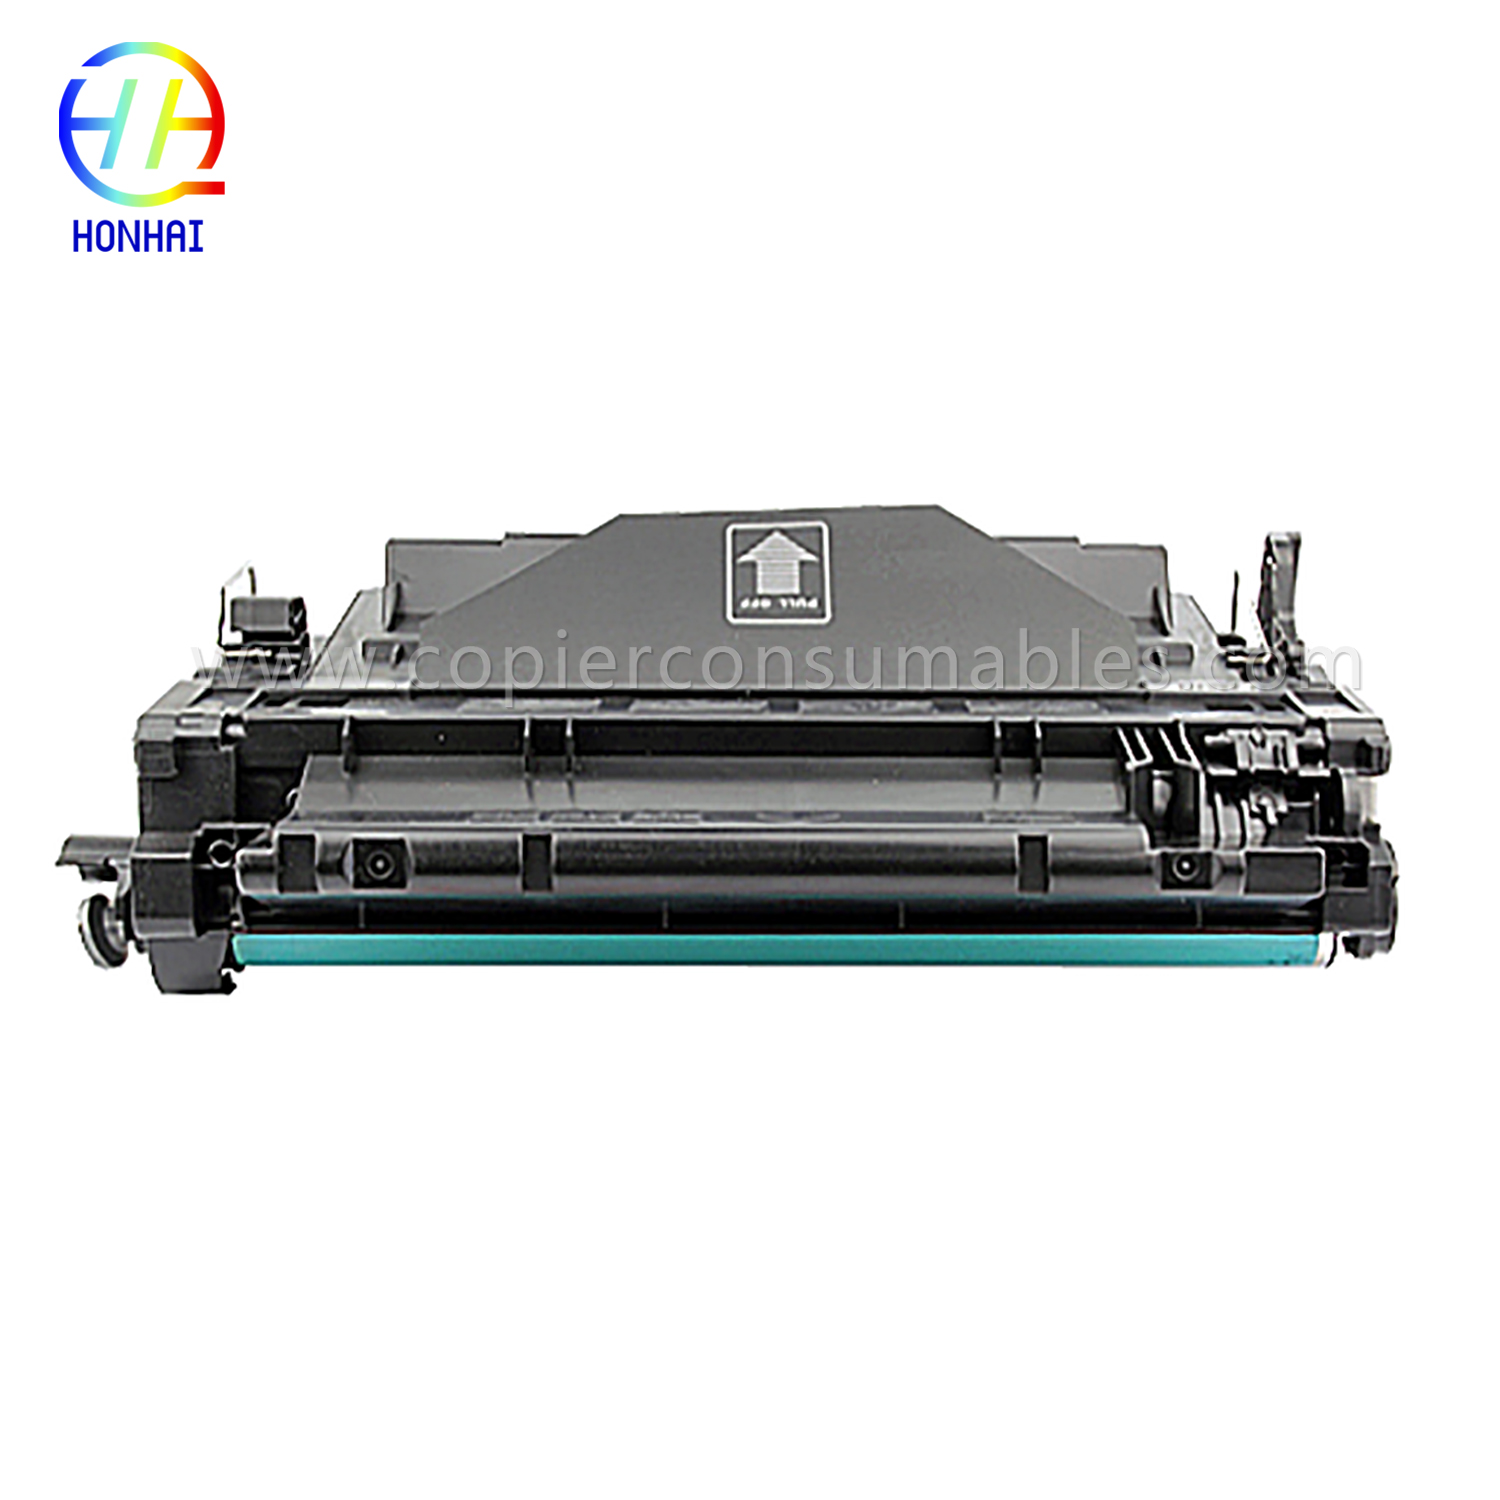 Color Toner Cartridges for HP LaserJet Pro MFP M521dn Enterprise P3015 CE255X